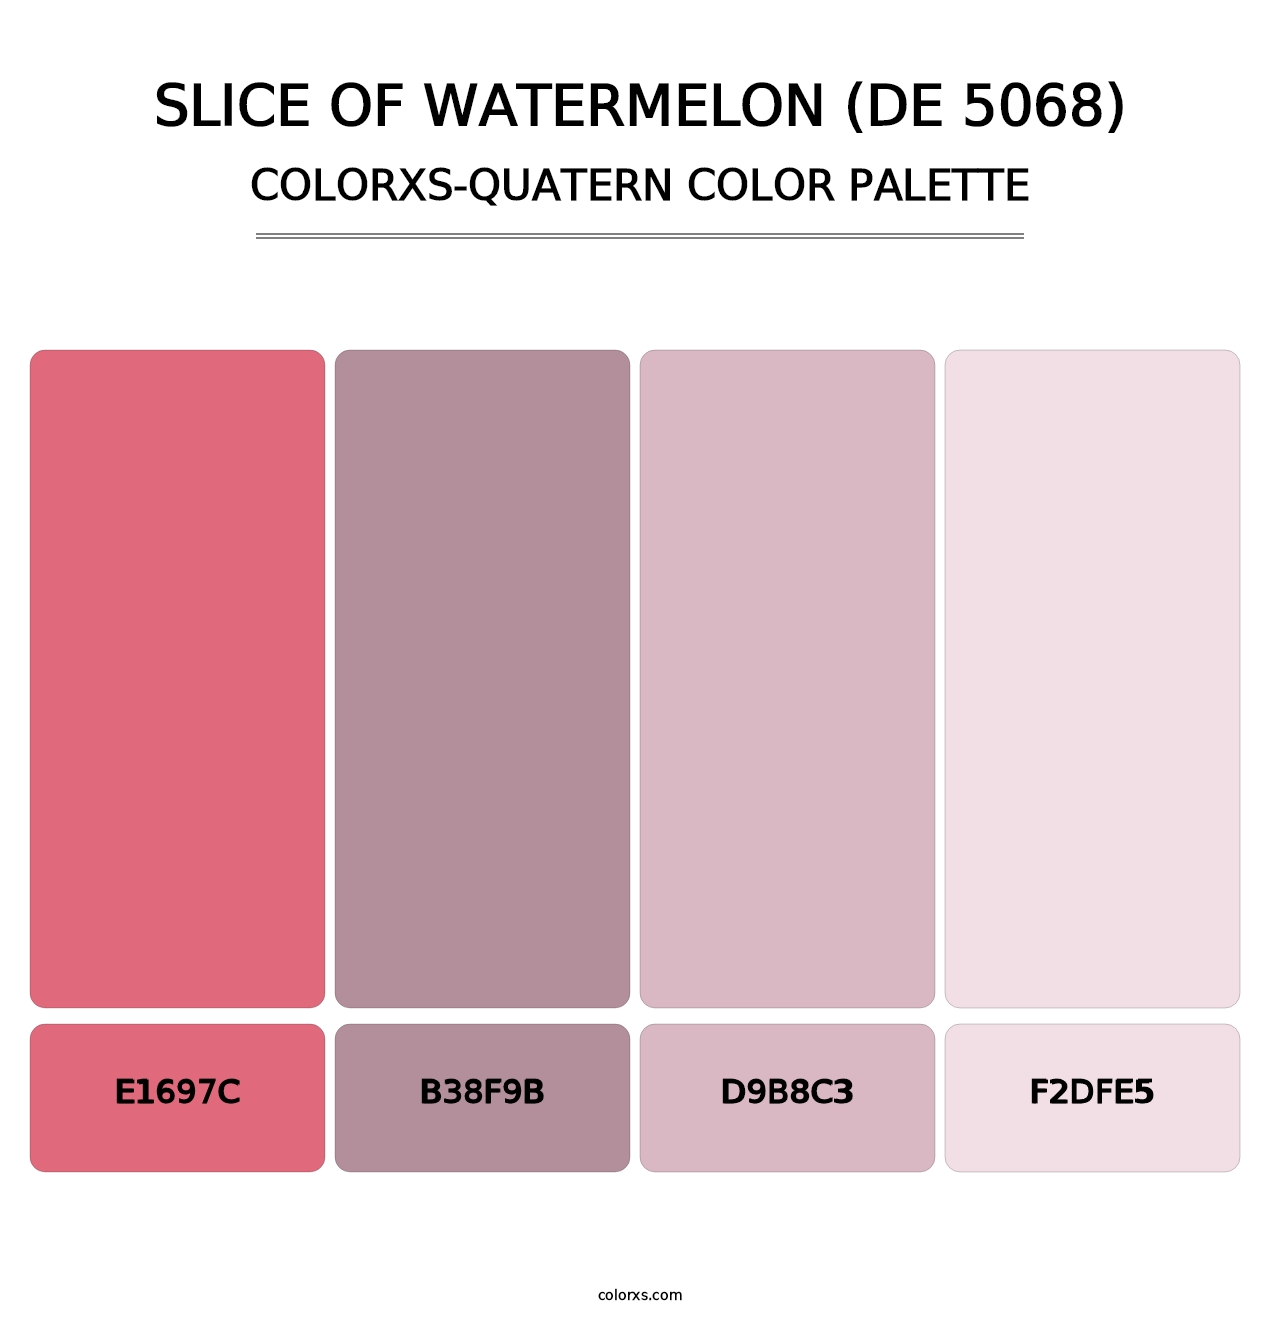 Slice of Watermelon (DE 5068) - Colorxs Quatern Palette